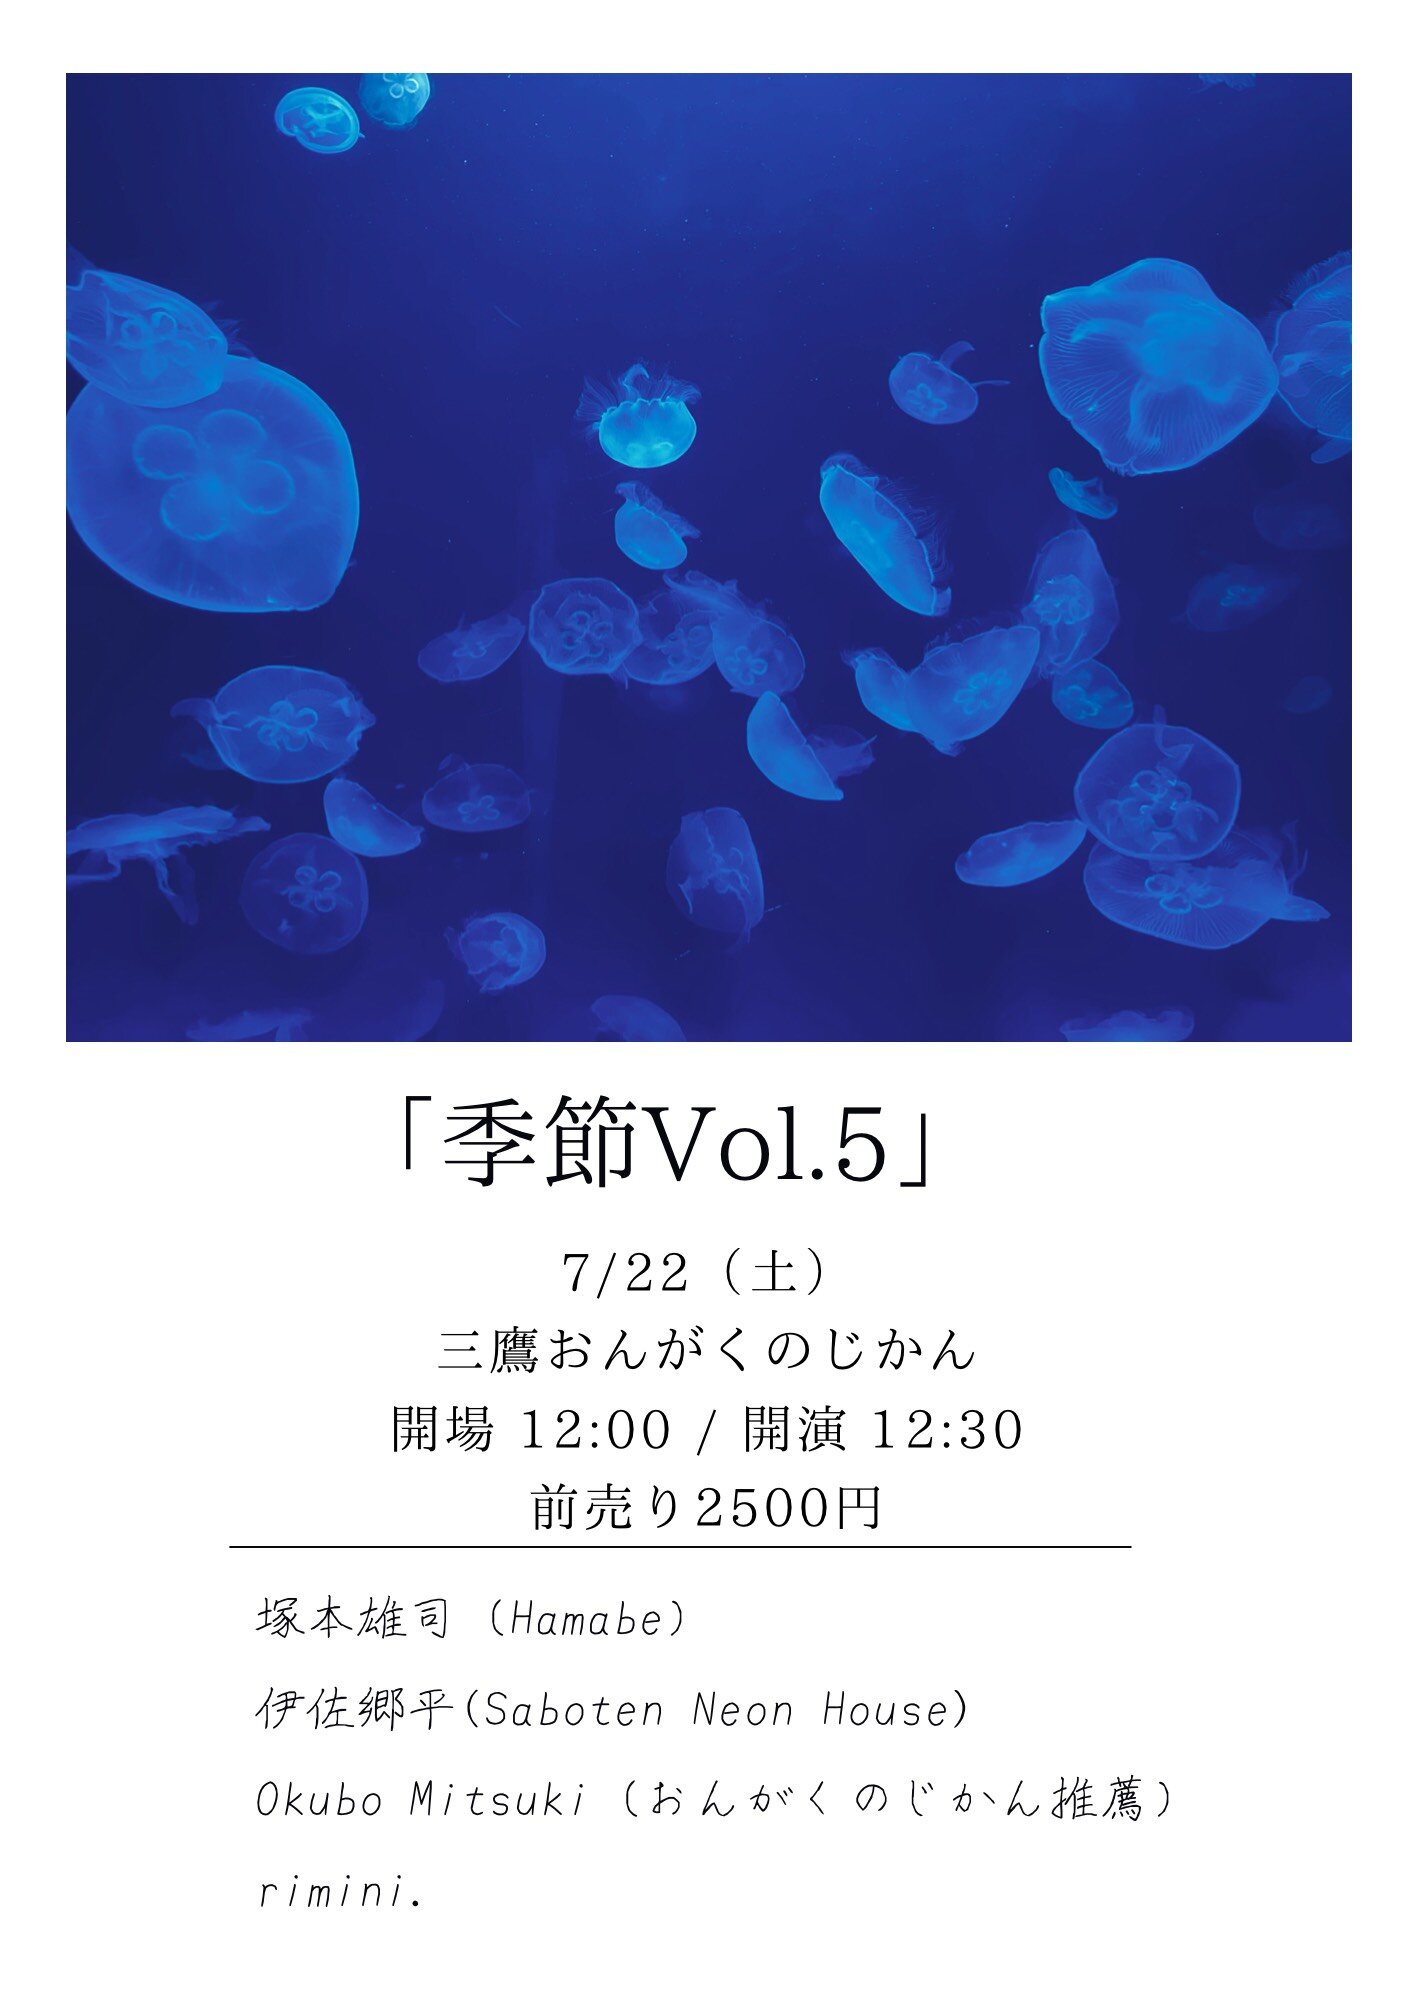 【昼の部】季節vol.5《塚本雄司（Hamabe）・伊佐郷平（Saboten Neon House）・rimini.・Okubo Mitsuki（おんがくのじかん推薦）》